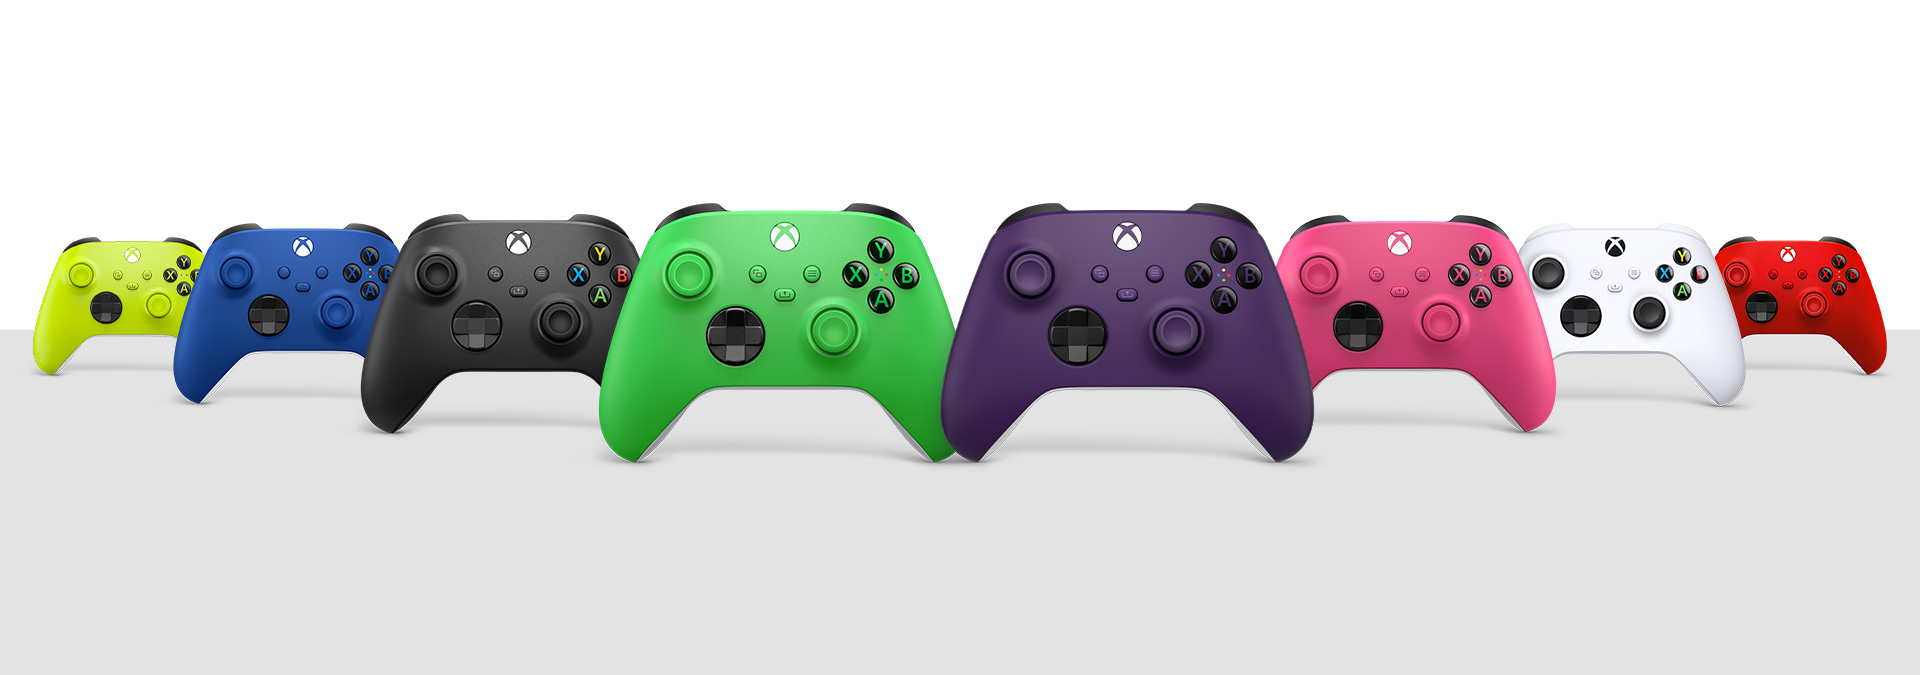 Kontroler bezprzewodowy Xbox w kolorze: węglowej czerni, robotycznej bieli, piorunującego błękitu, pulsującej czerwieni, elektryzującej zieleni, zdecydowanego różu, dziarskiej zieleni i gwiezdnego fioletu